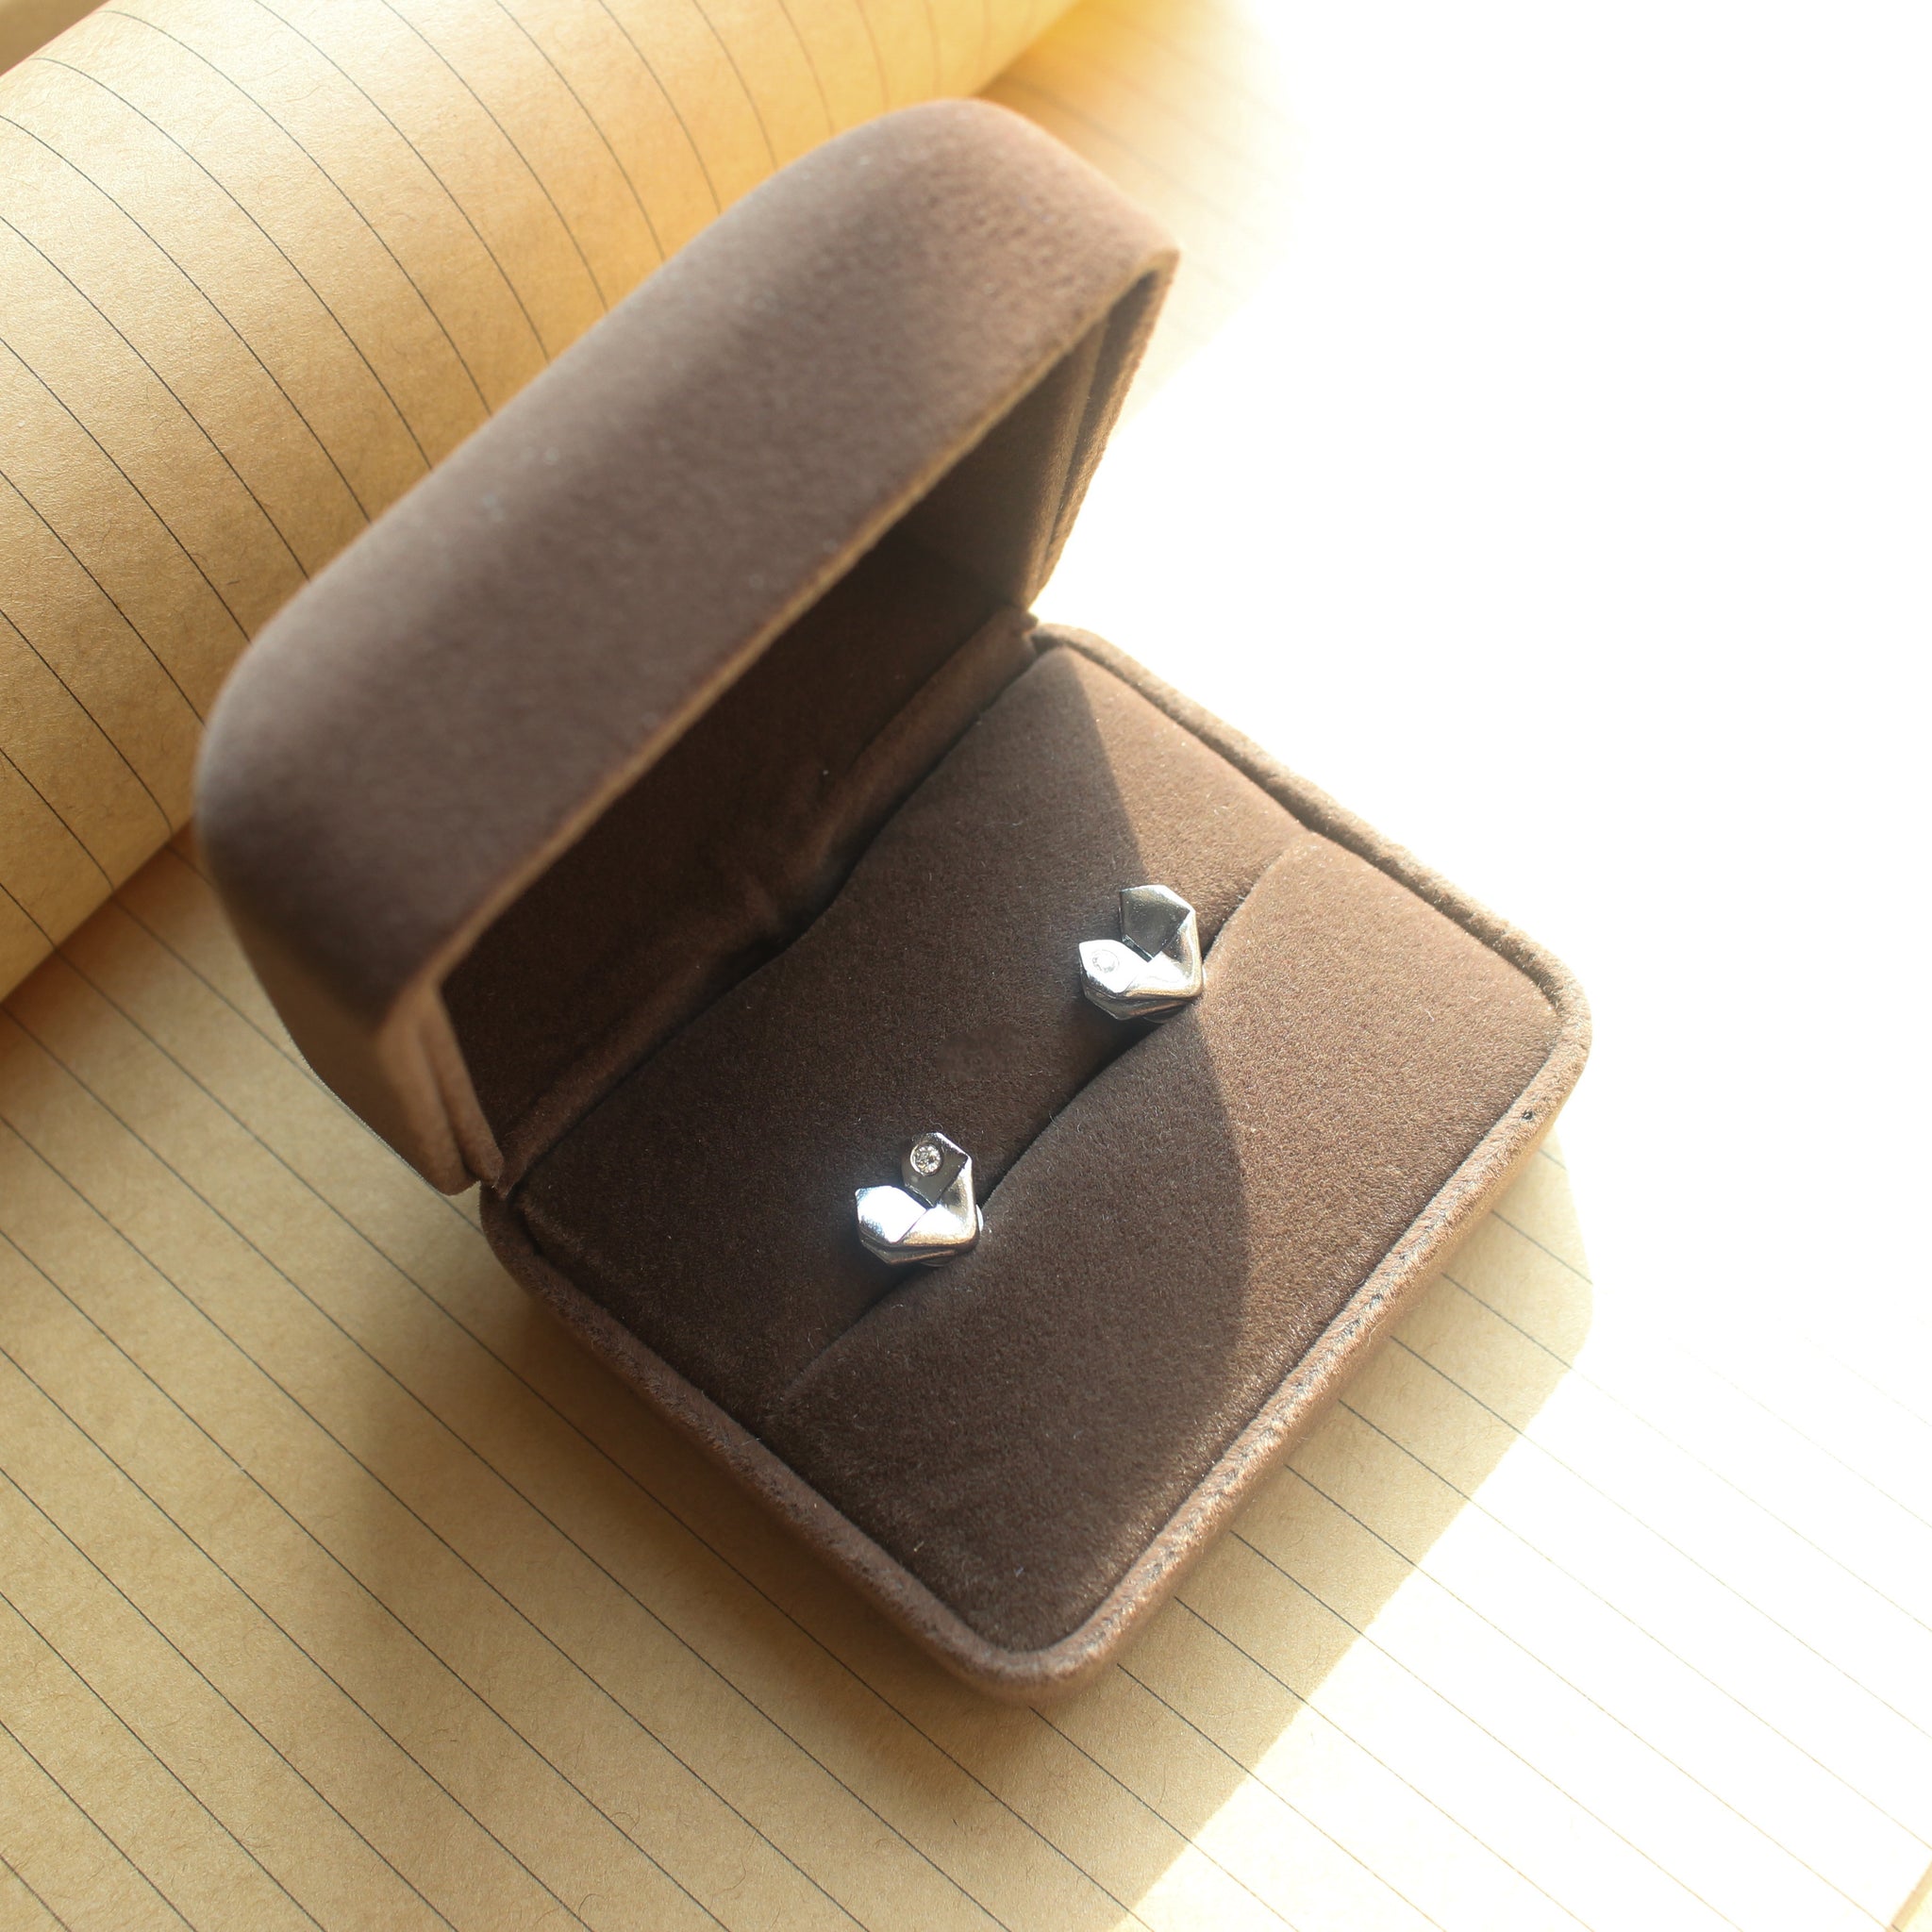 925 Silver Origami Heart Diamond Earrings